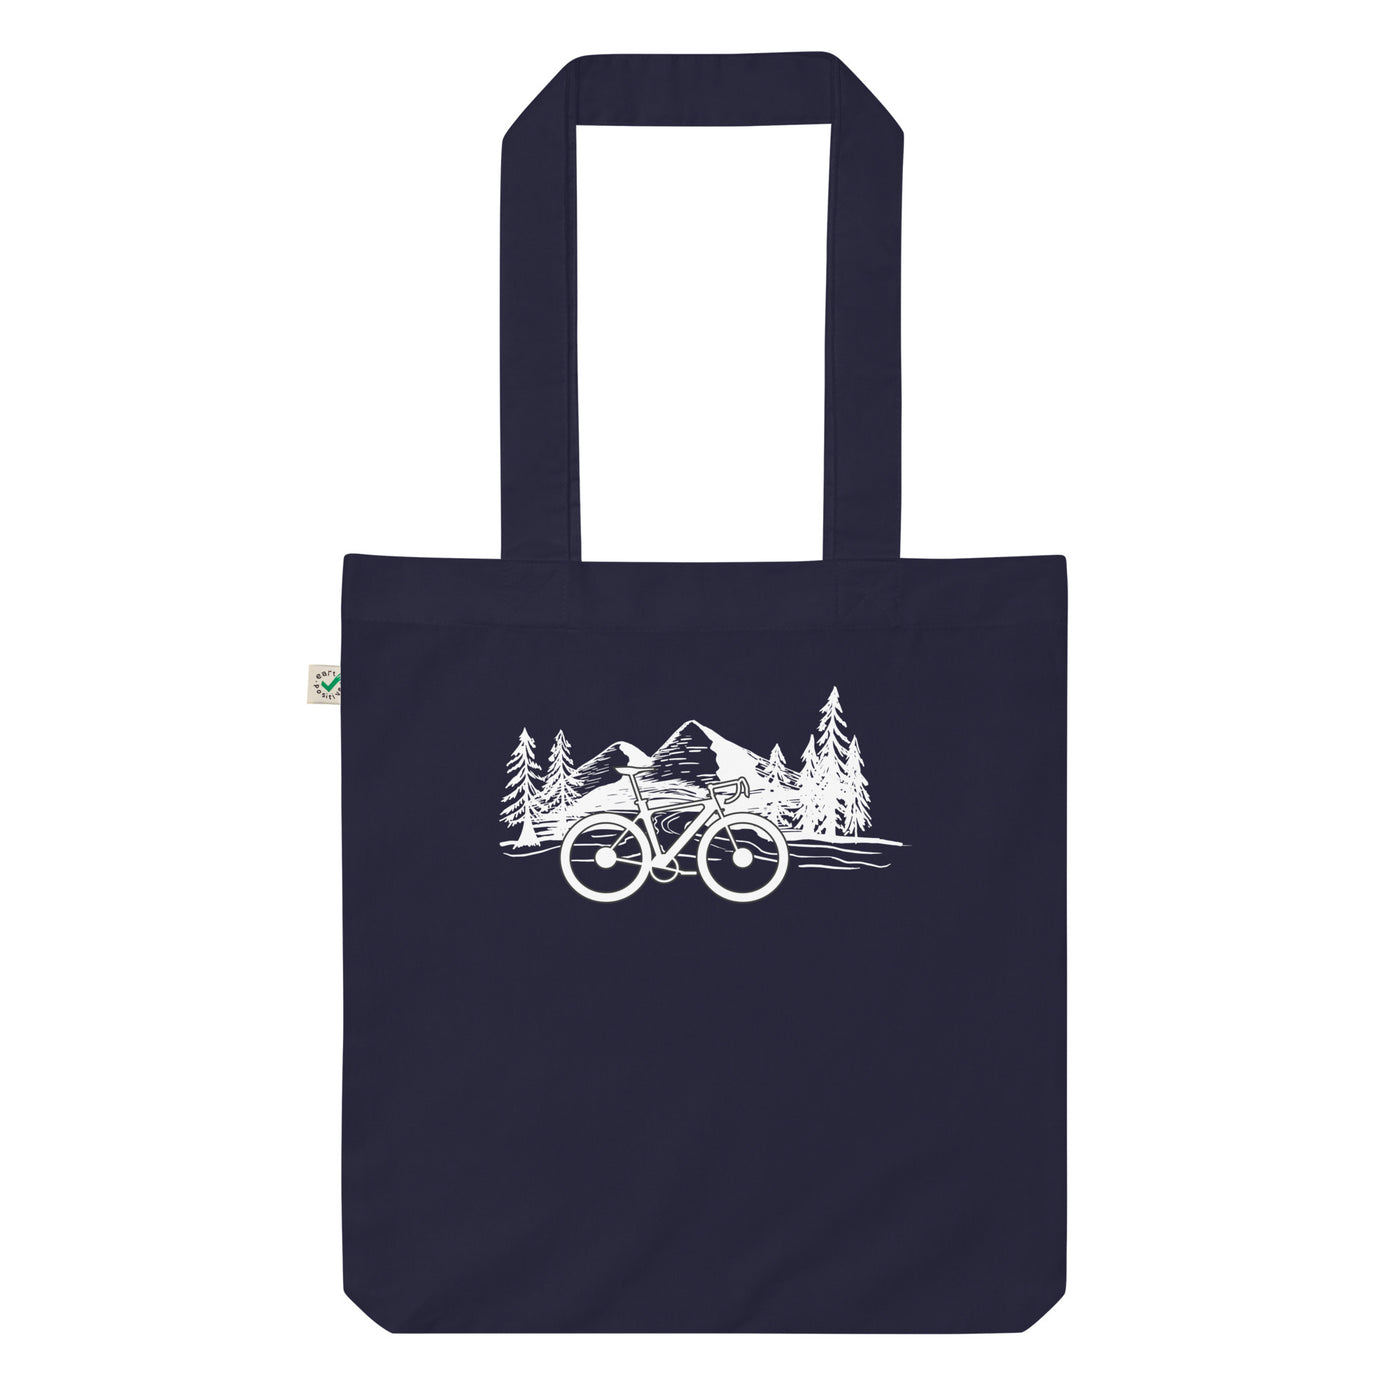 Fahrrad Und Berge - Organic Einkaufstasche fahrrad